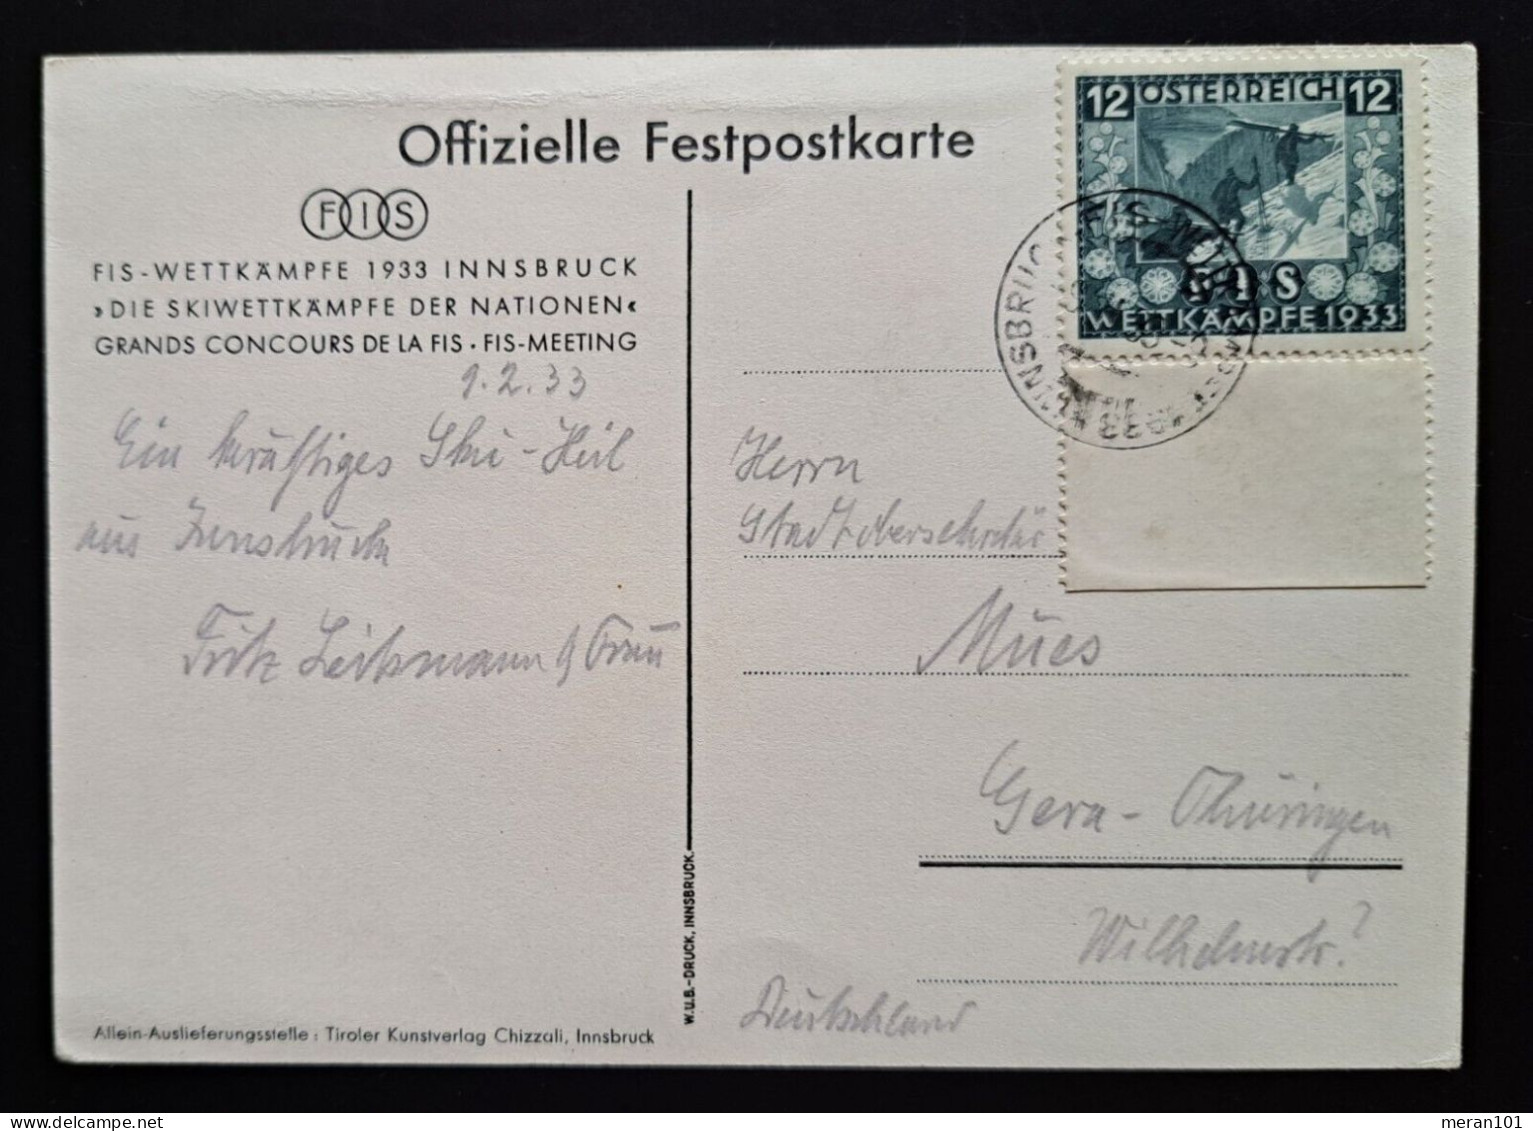 Österreich, Festpostkarte FIS- WETTKÄMPFE 1933 Mi 551 - Covers & Documents